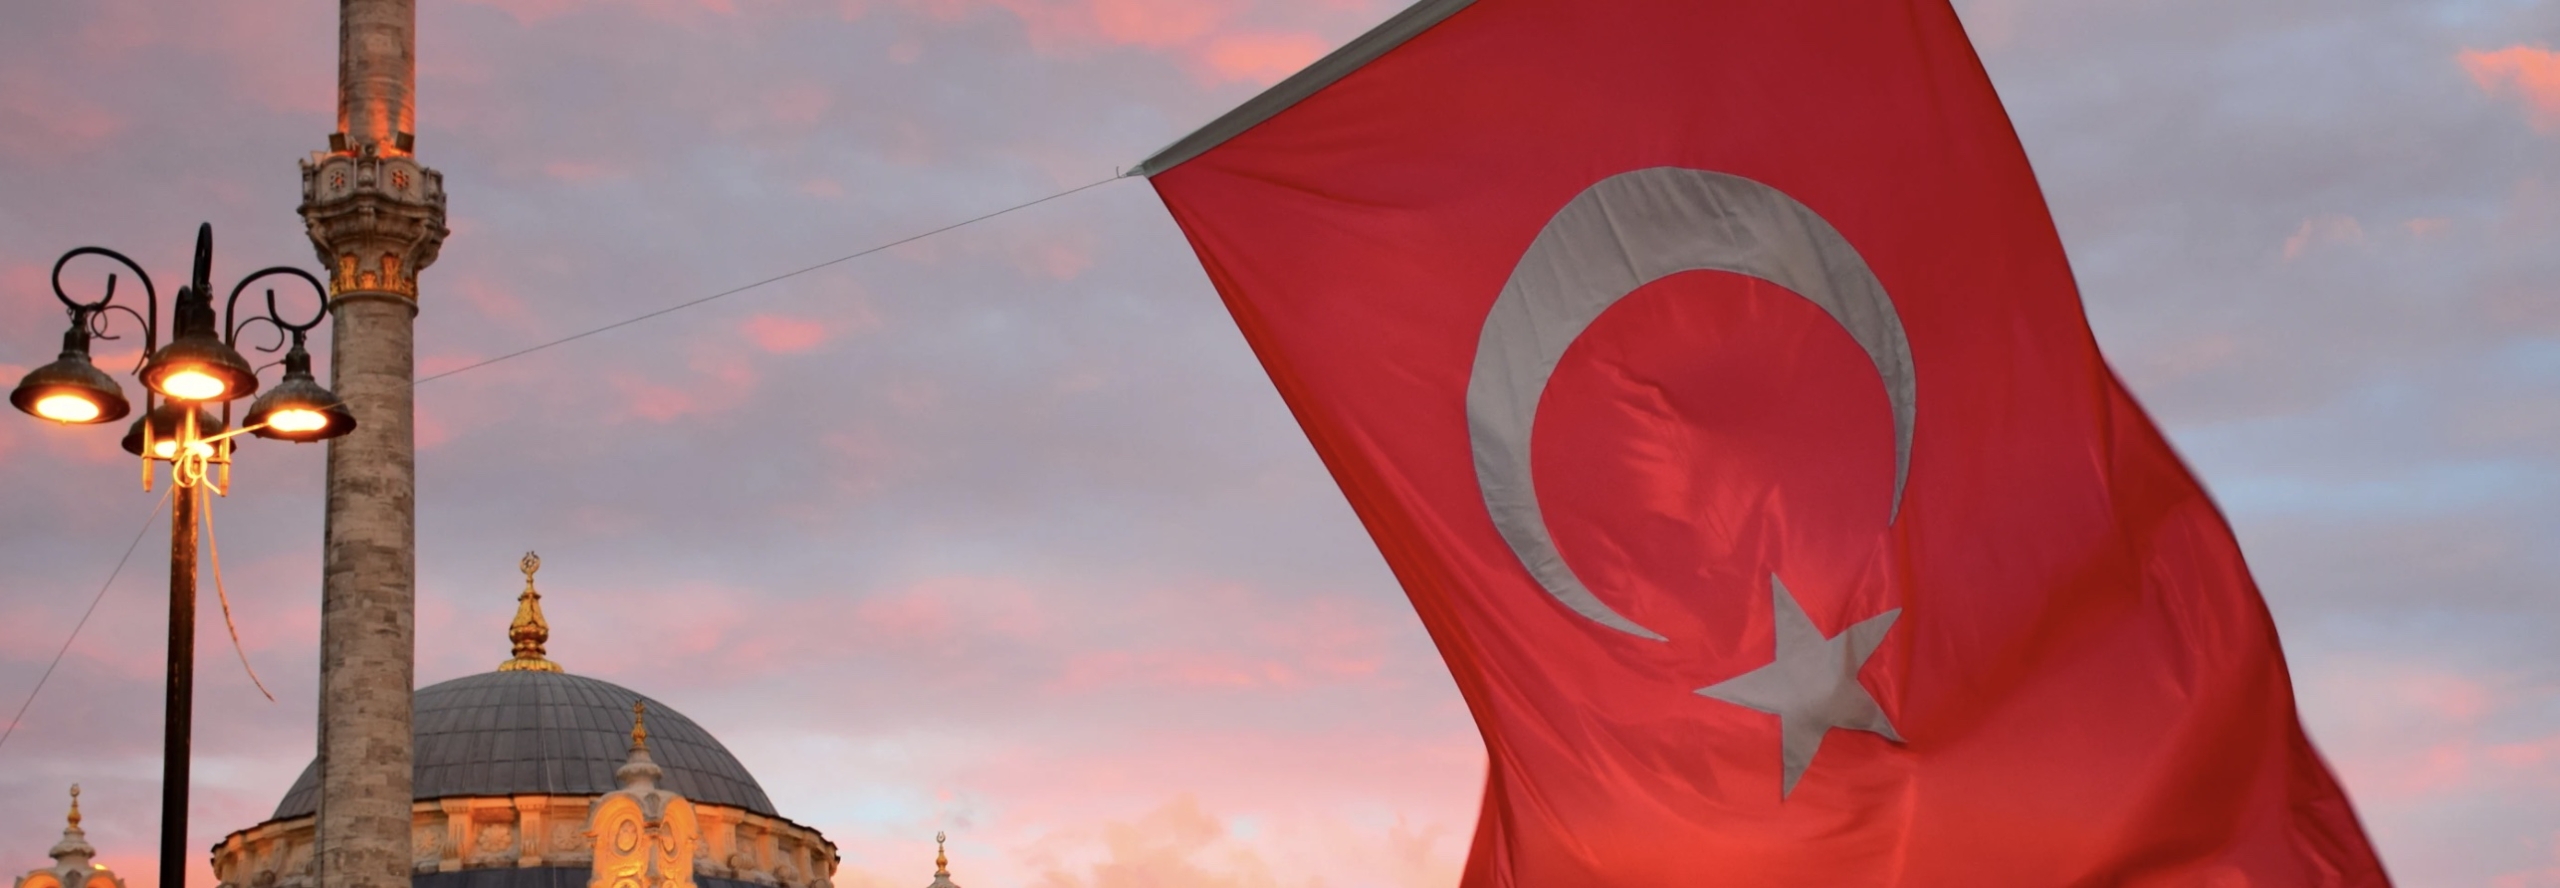 Эрдоган подвел: турецкие банки начали блокировать счета российских компаний